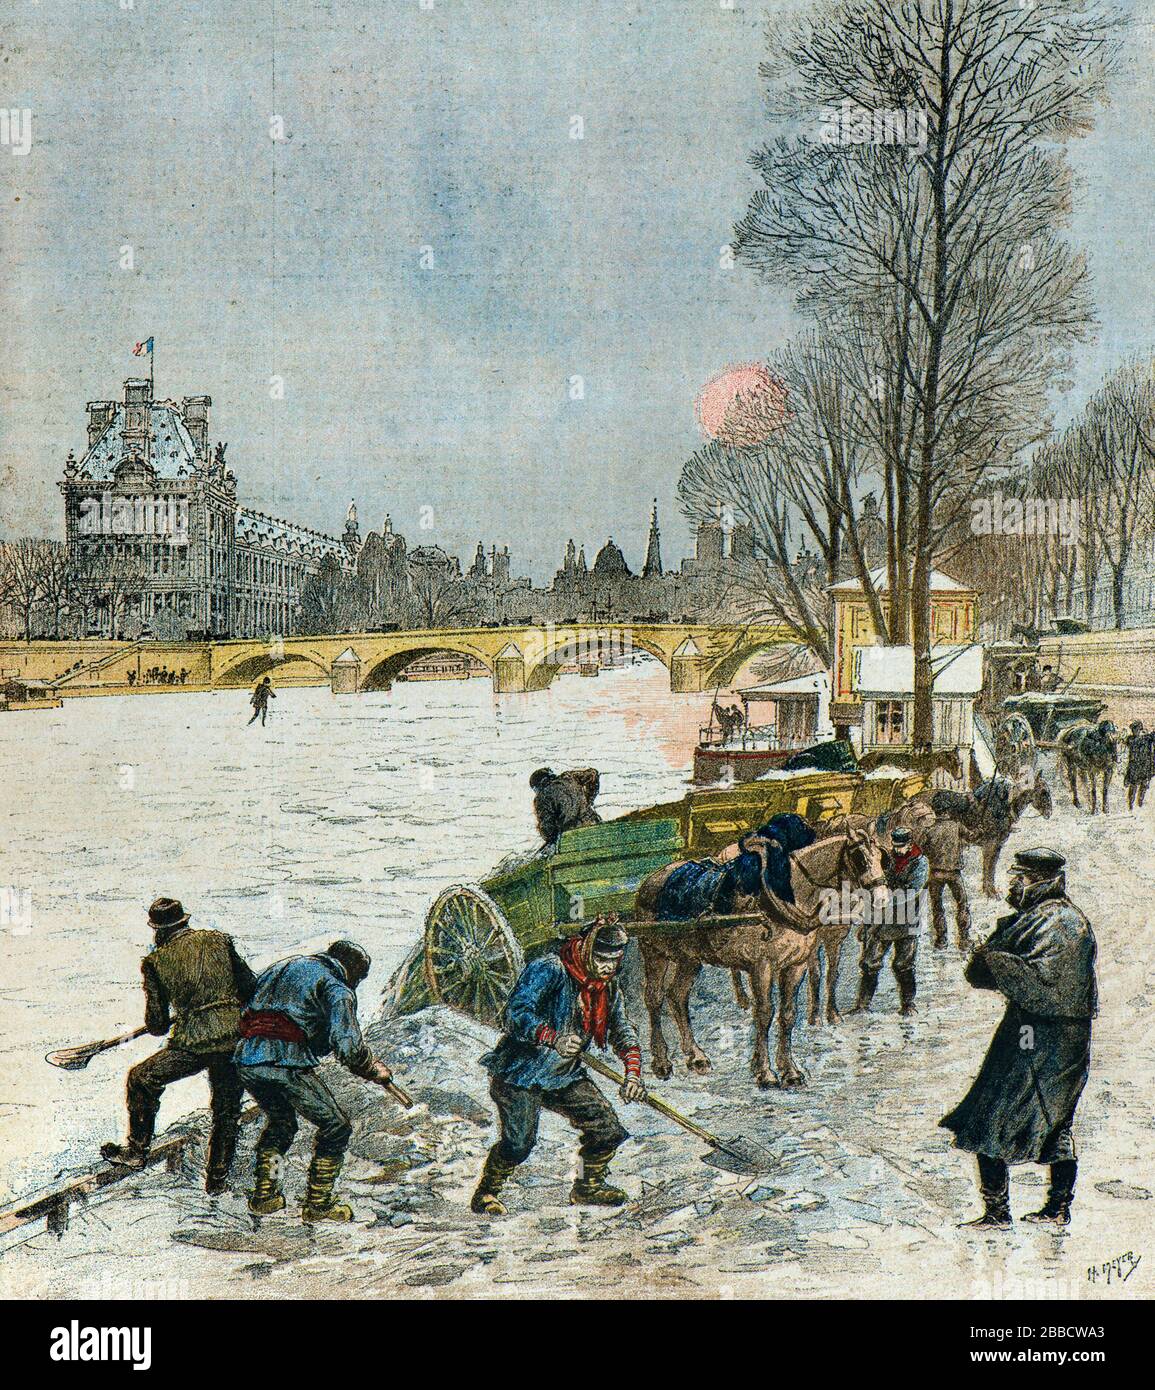 Meyer Henri ( 1841 - 1899 ) - vague froide au-dessus de Paris en février 1895, la Seine saisie par la glace - Collection privée Banque D'Images